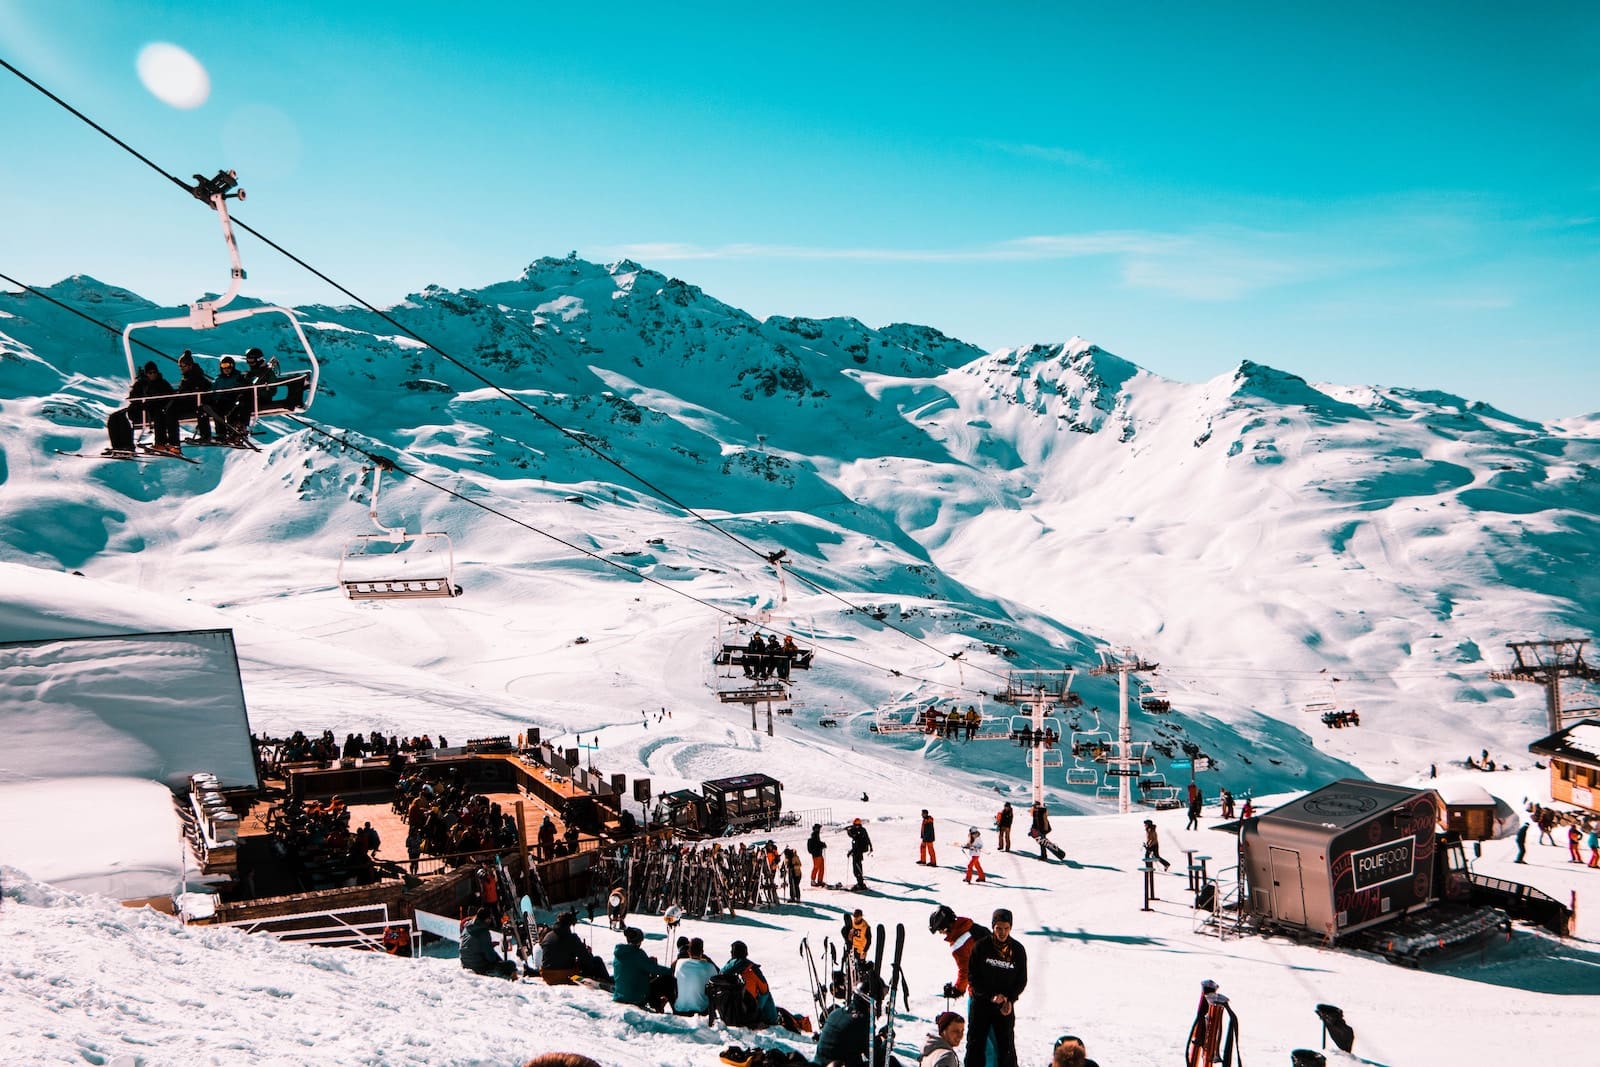 Historia del Esquí: Desde orígenes antiguos hasta las modernas pistas